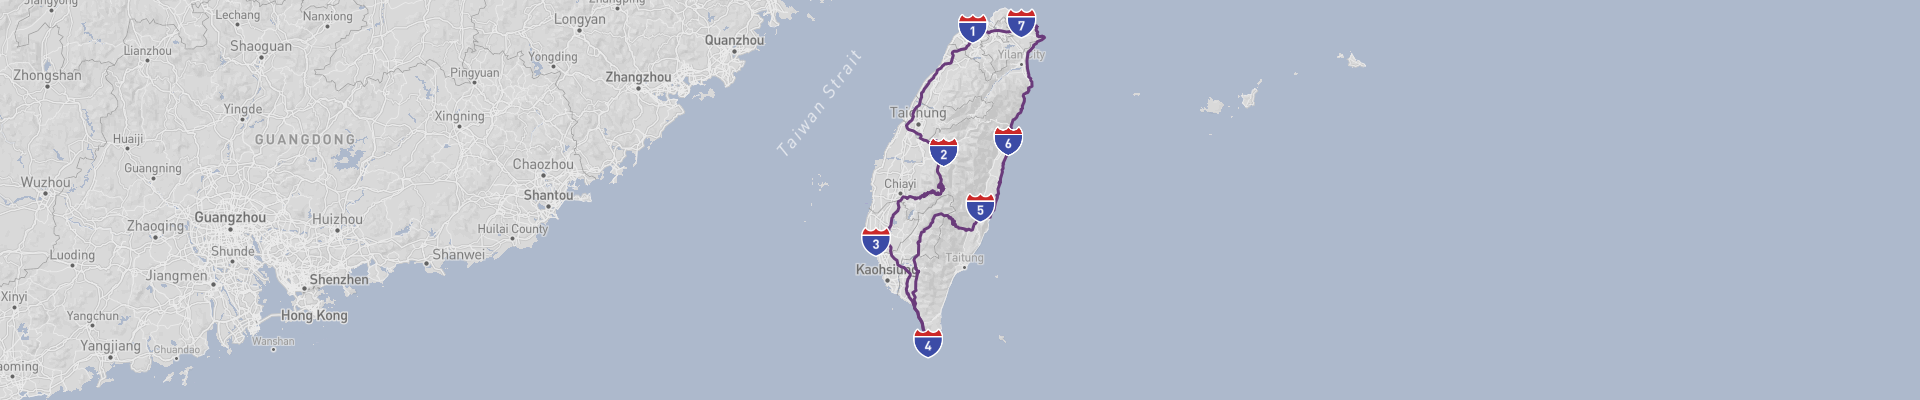 台湾公路之旅